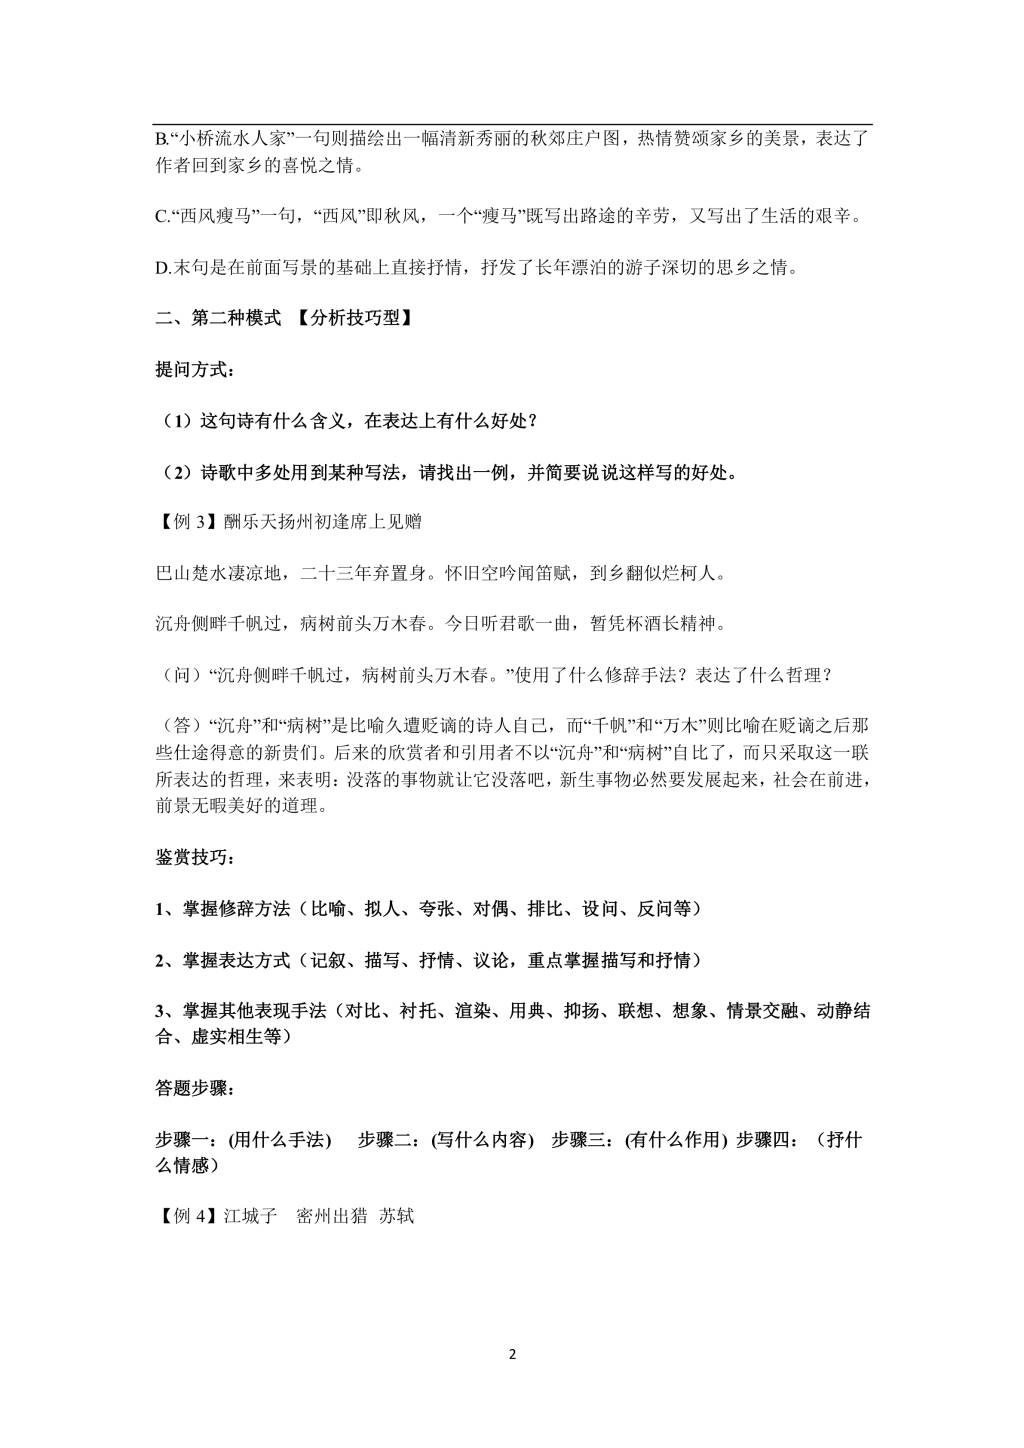 2021年寒假预习资料初中语文诗词鉴赏答题技巧（文件编号：21013109）